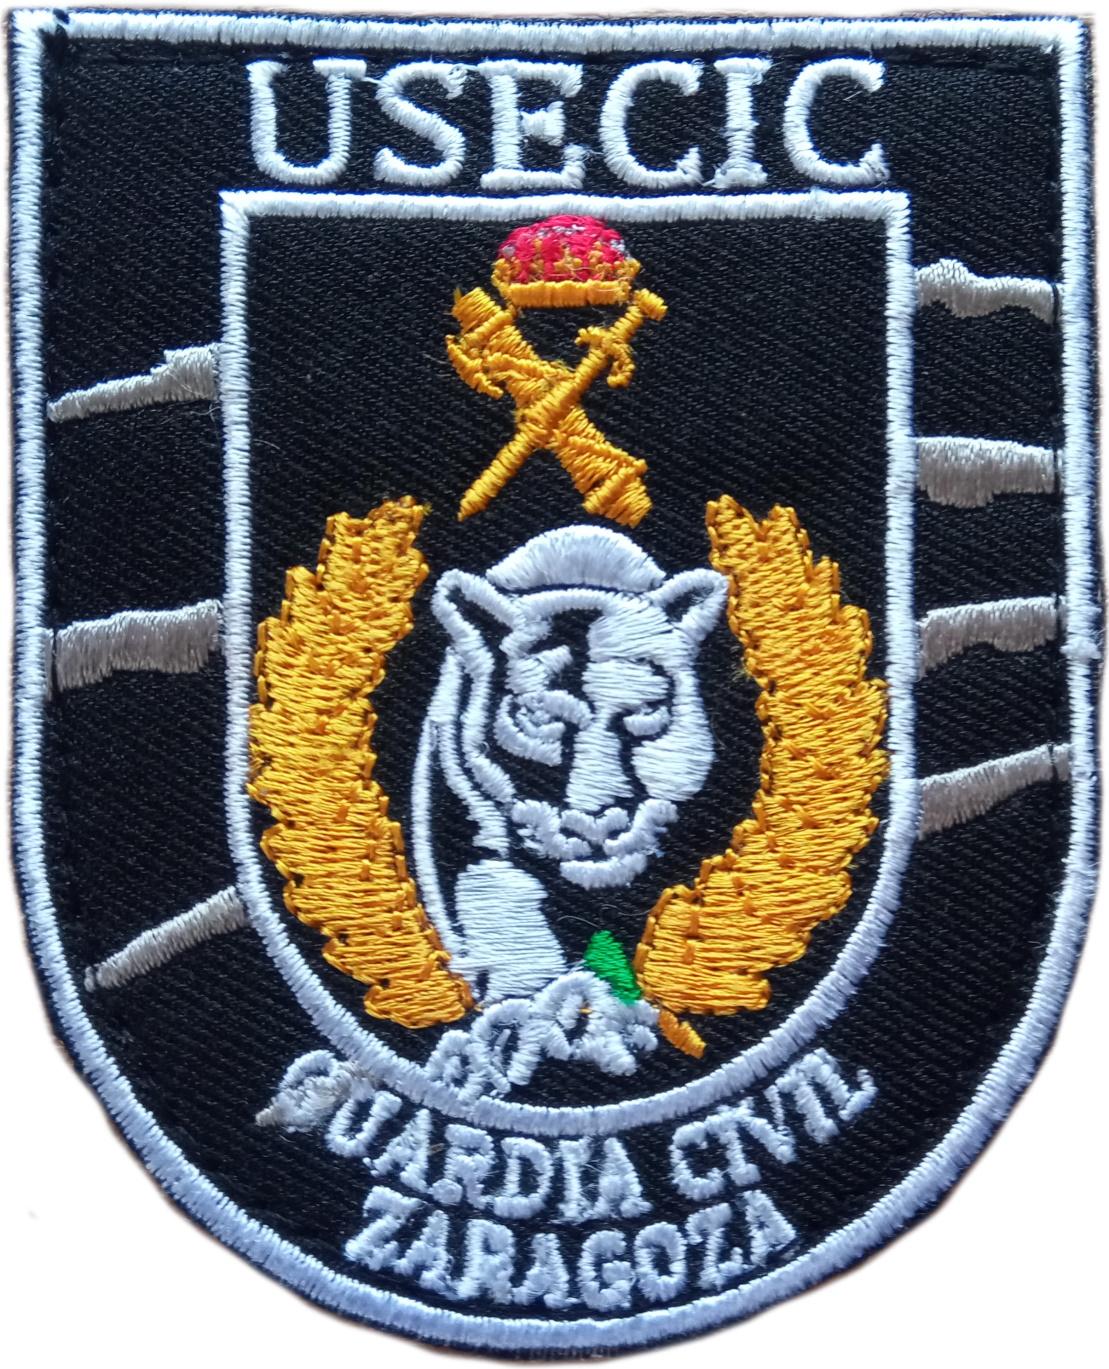 Guardia Civil Usecic Zaragoza parche insignia emblema distintivo